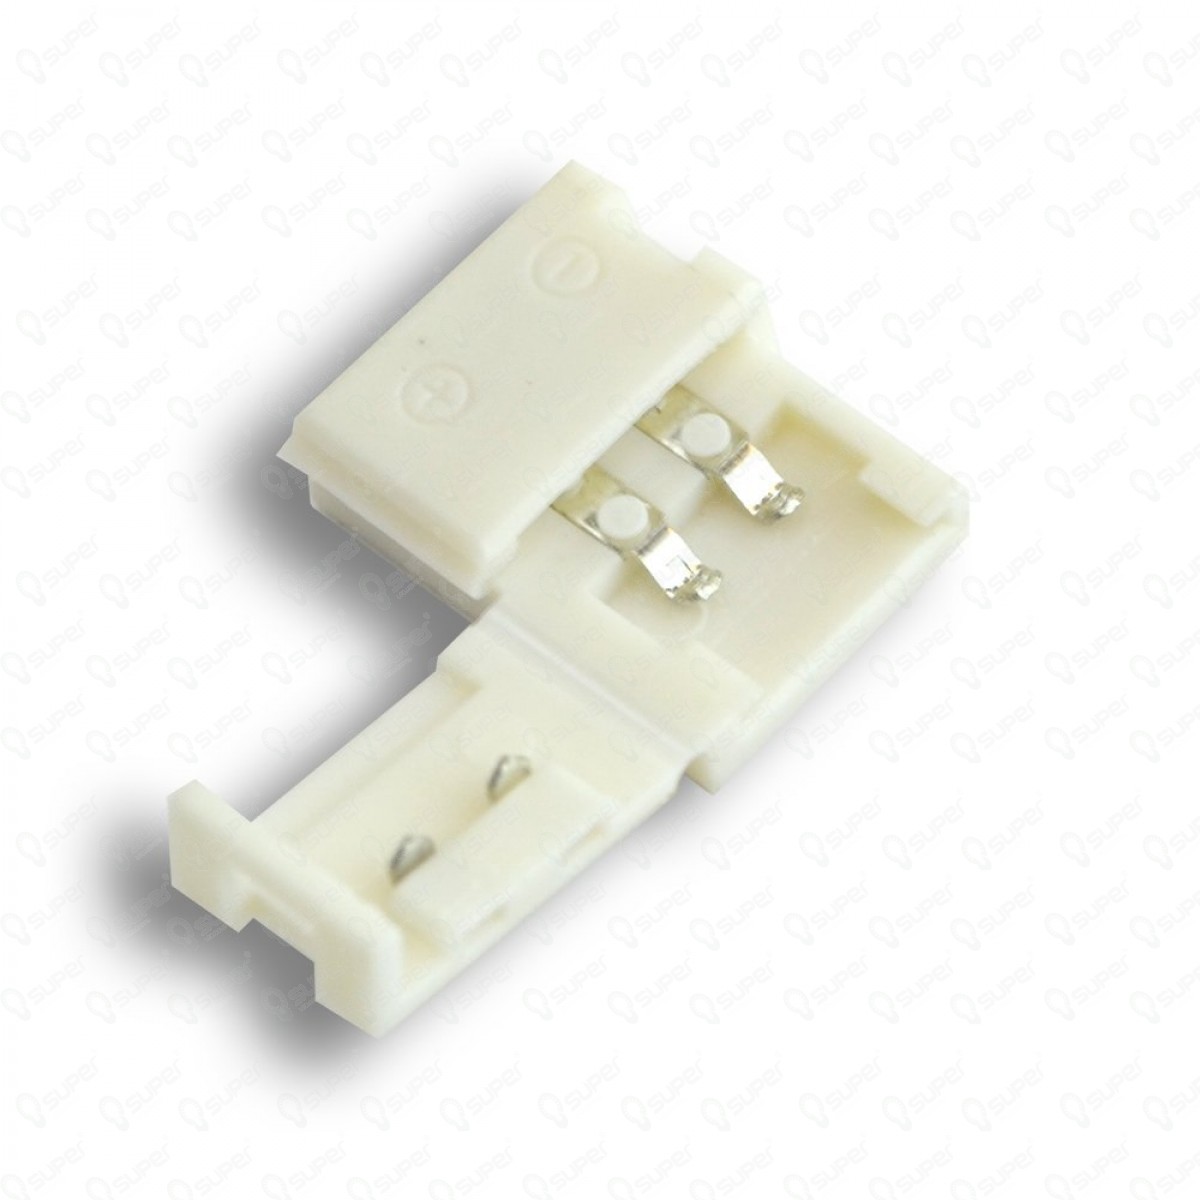 Connecteur jonction Femelle Femelle pour ruban à led 2 contacts (leds 3528)